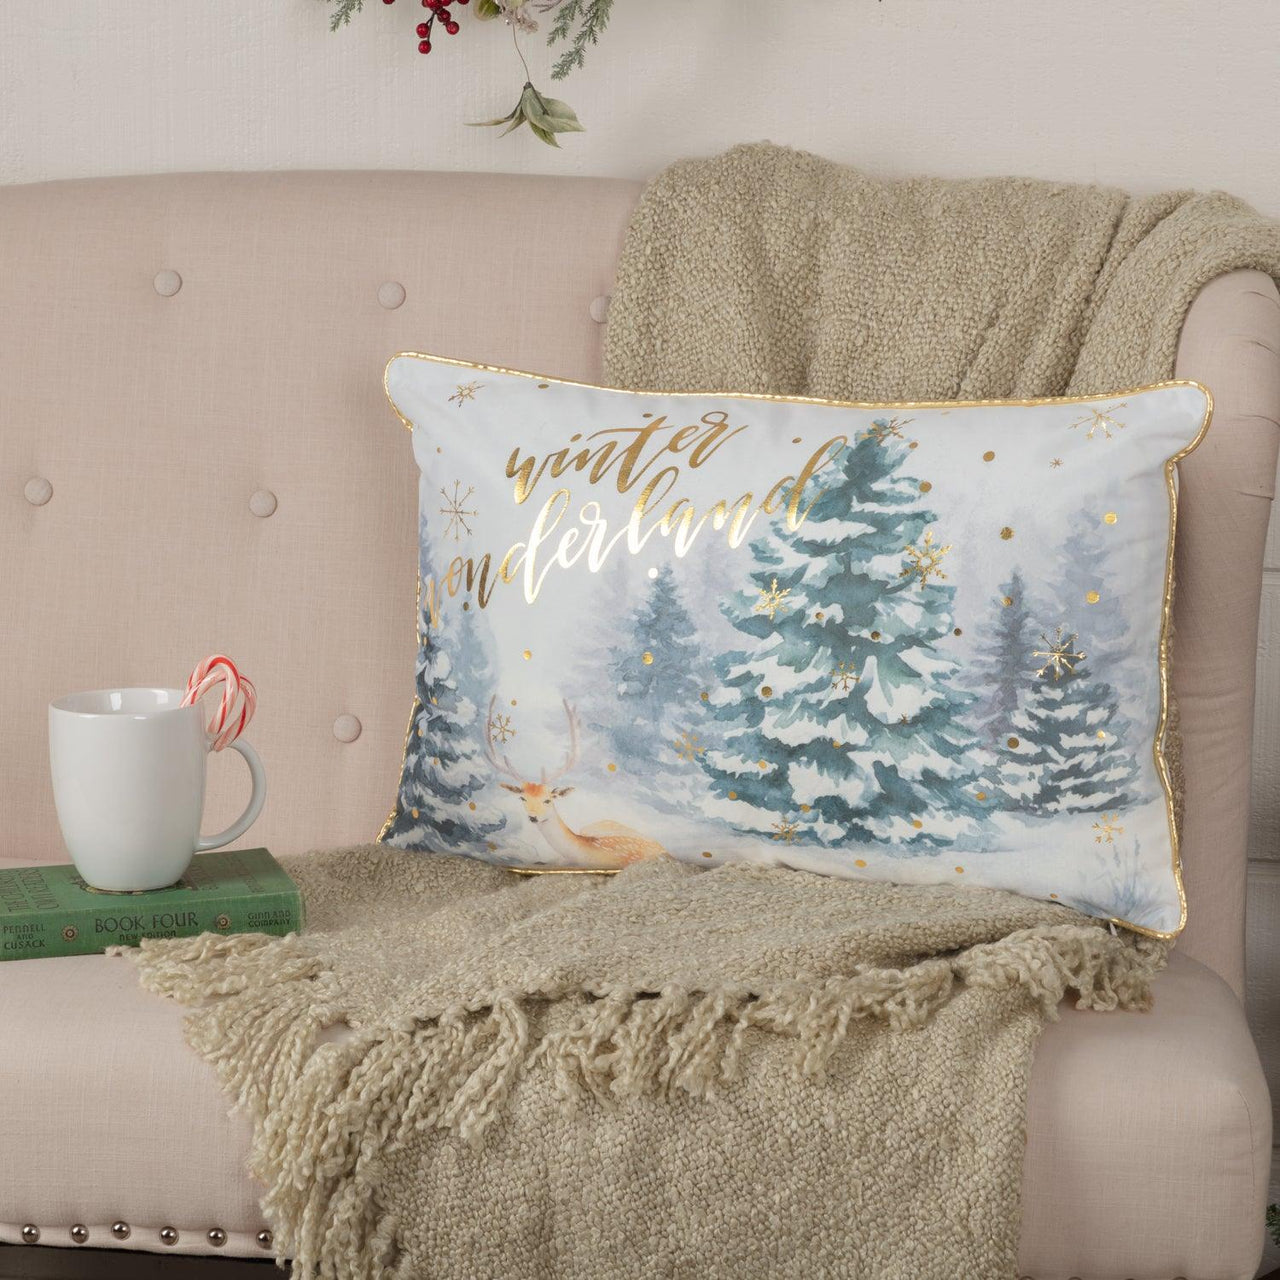 Winter Wonderland Pillow 14x22 VHC Brands - The Fox Decor